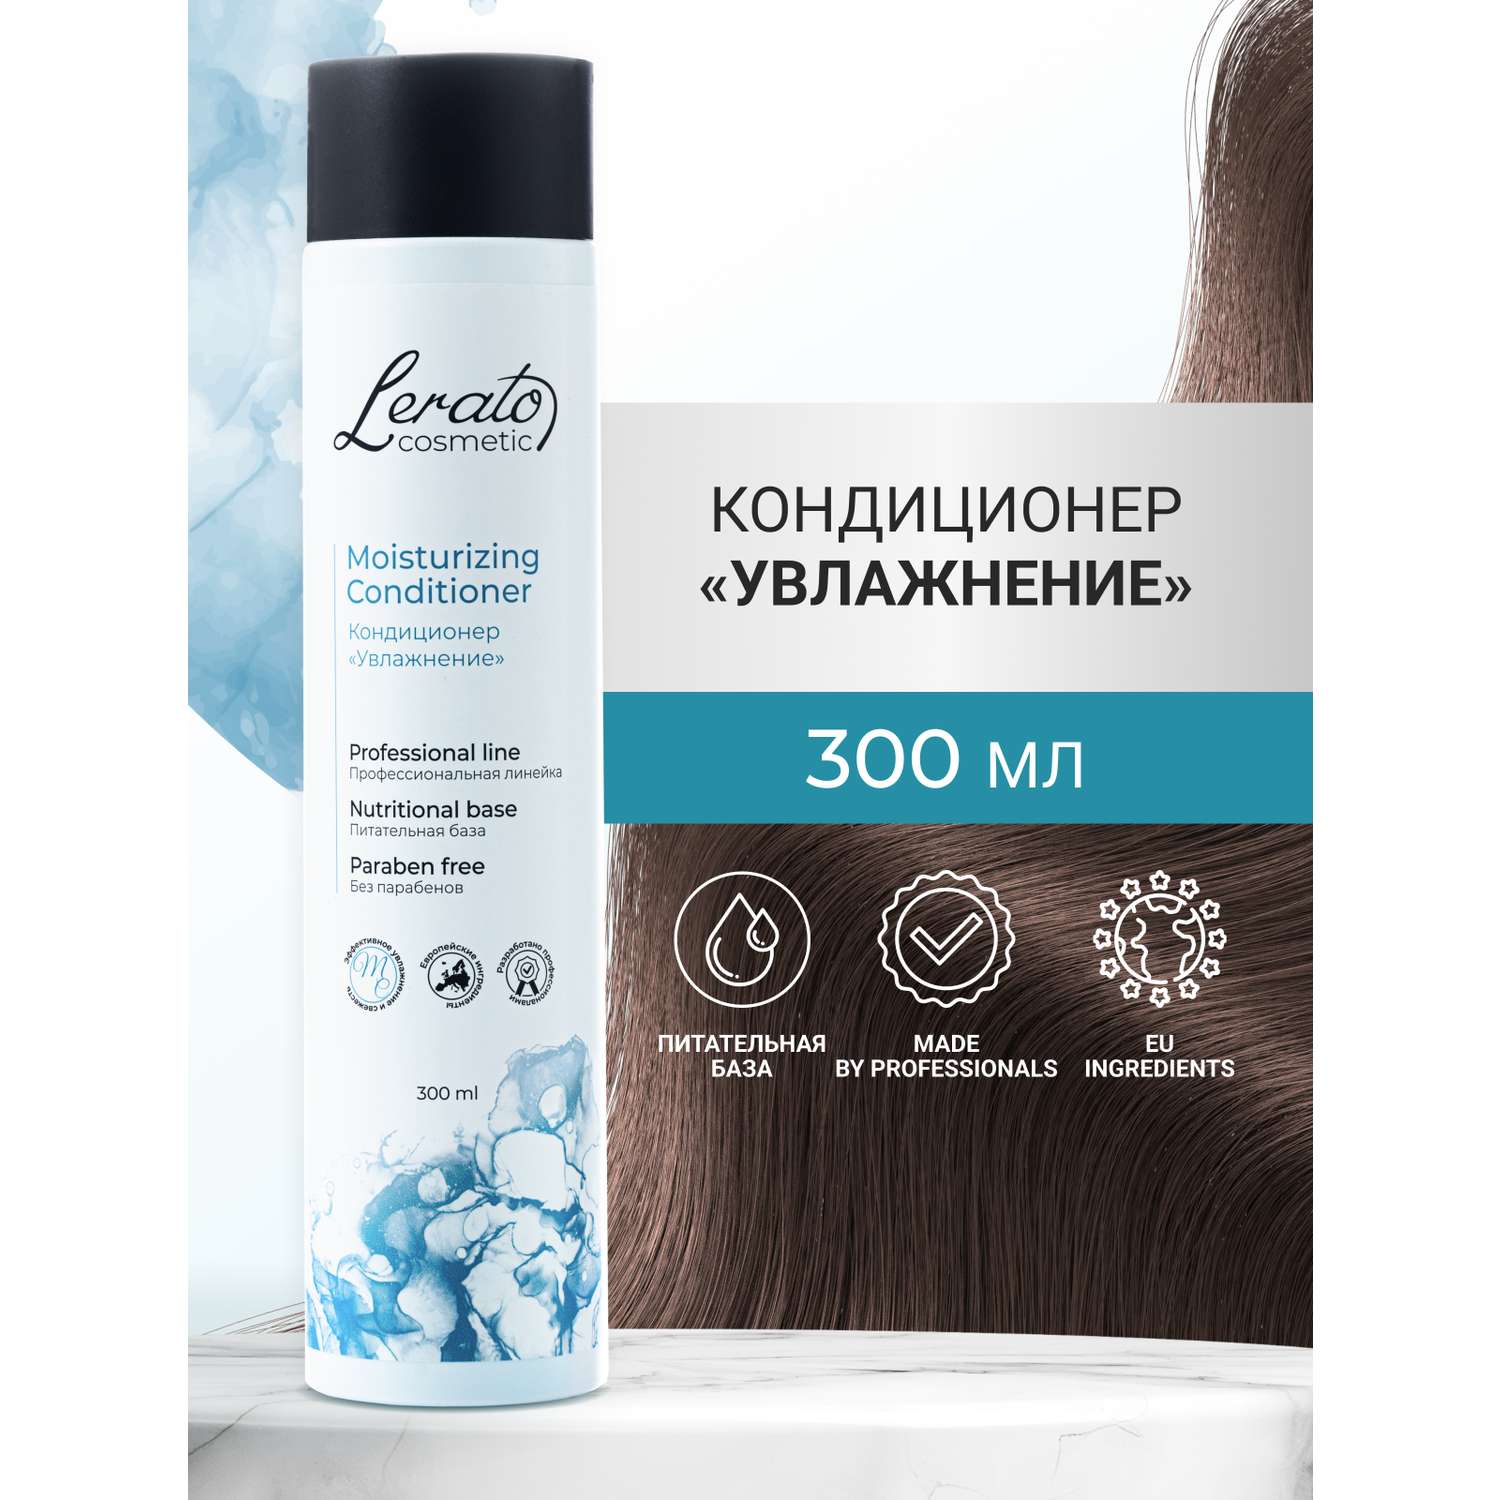 Кондиционер Lerato Cosmetic для увлажнения и продления свежести волос 300 мл - фото 2